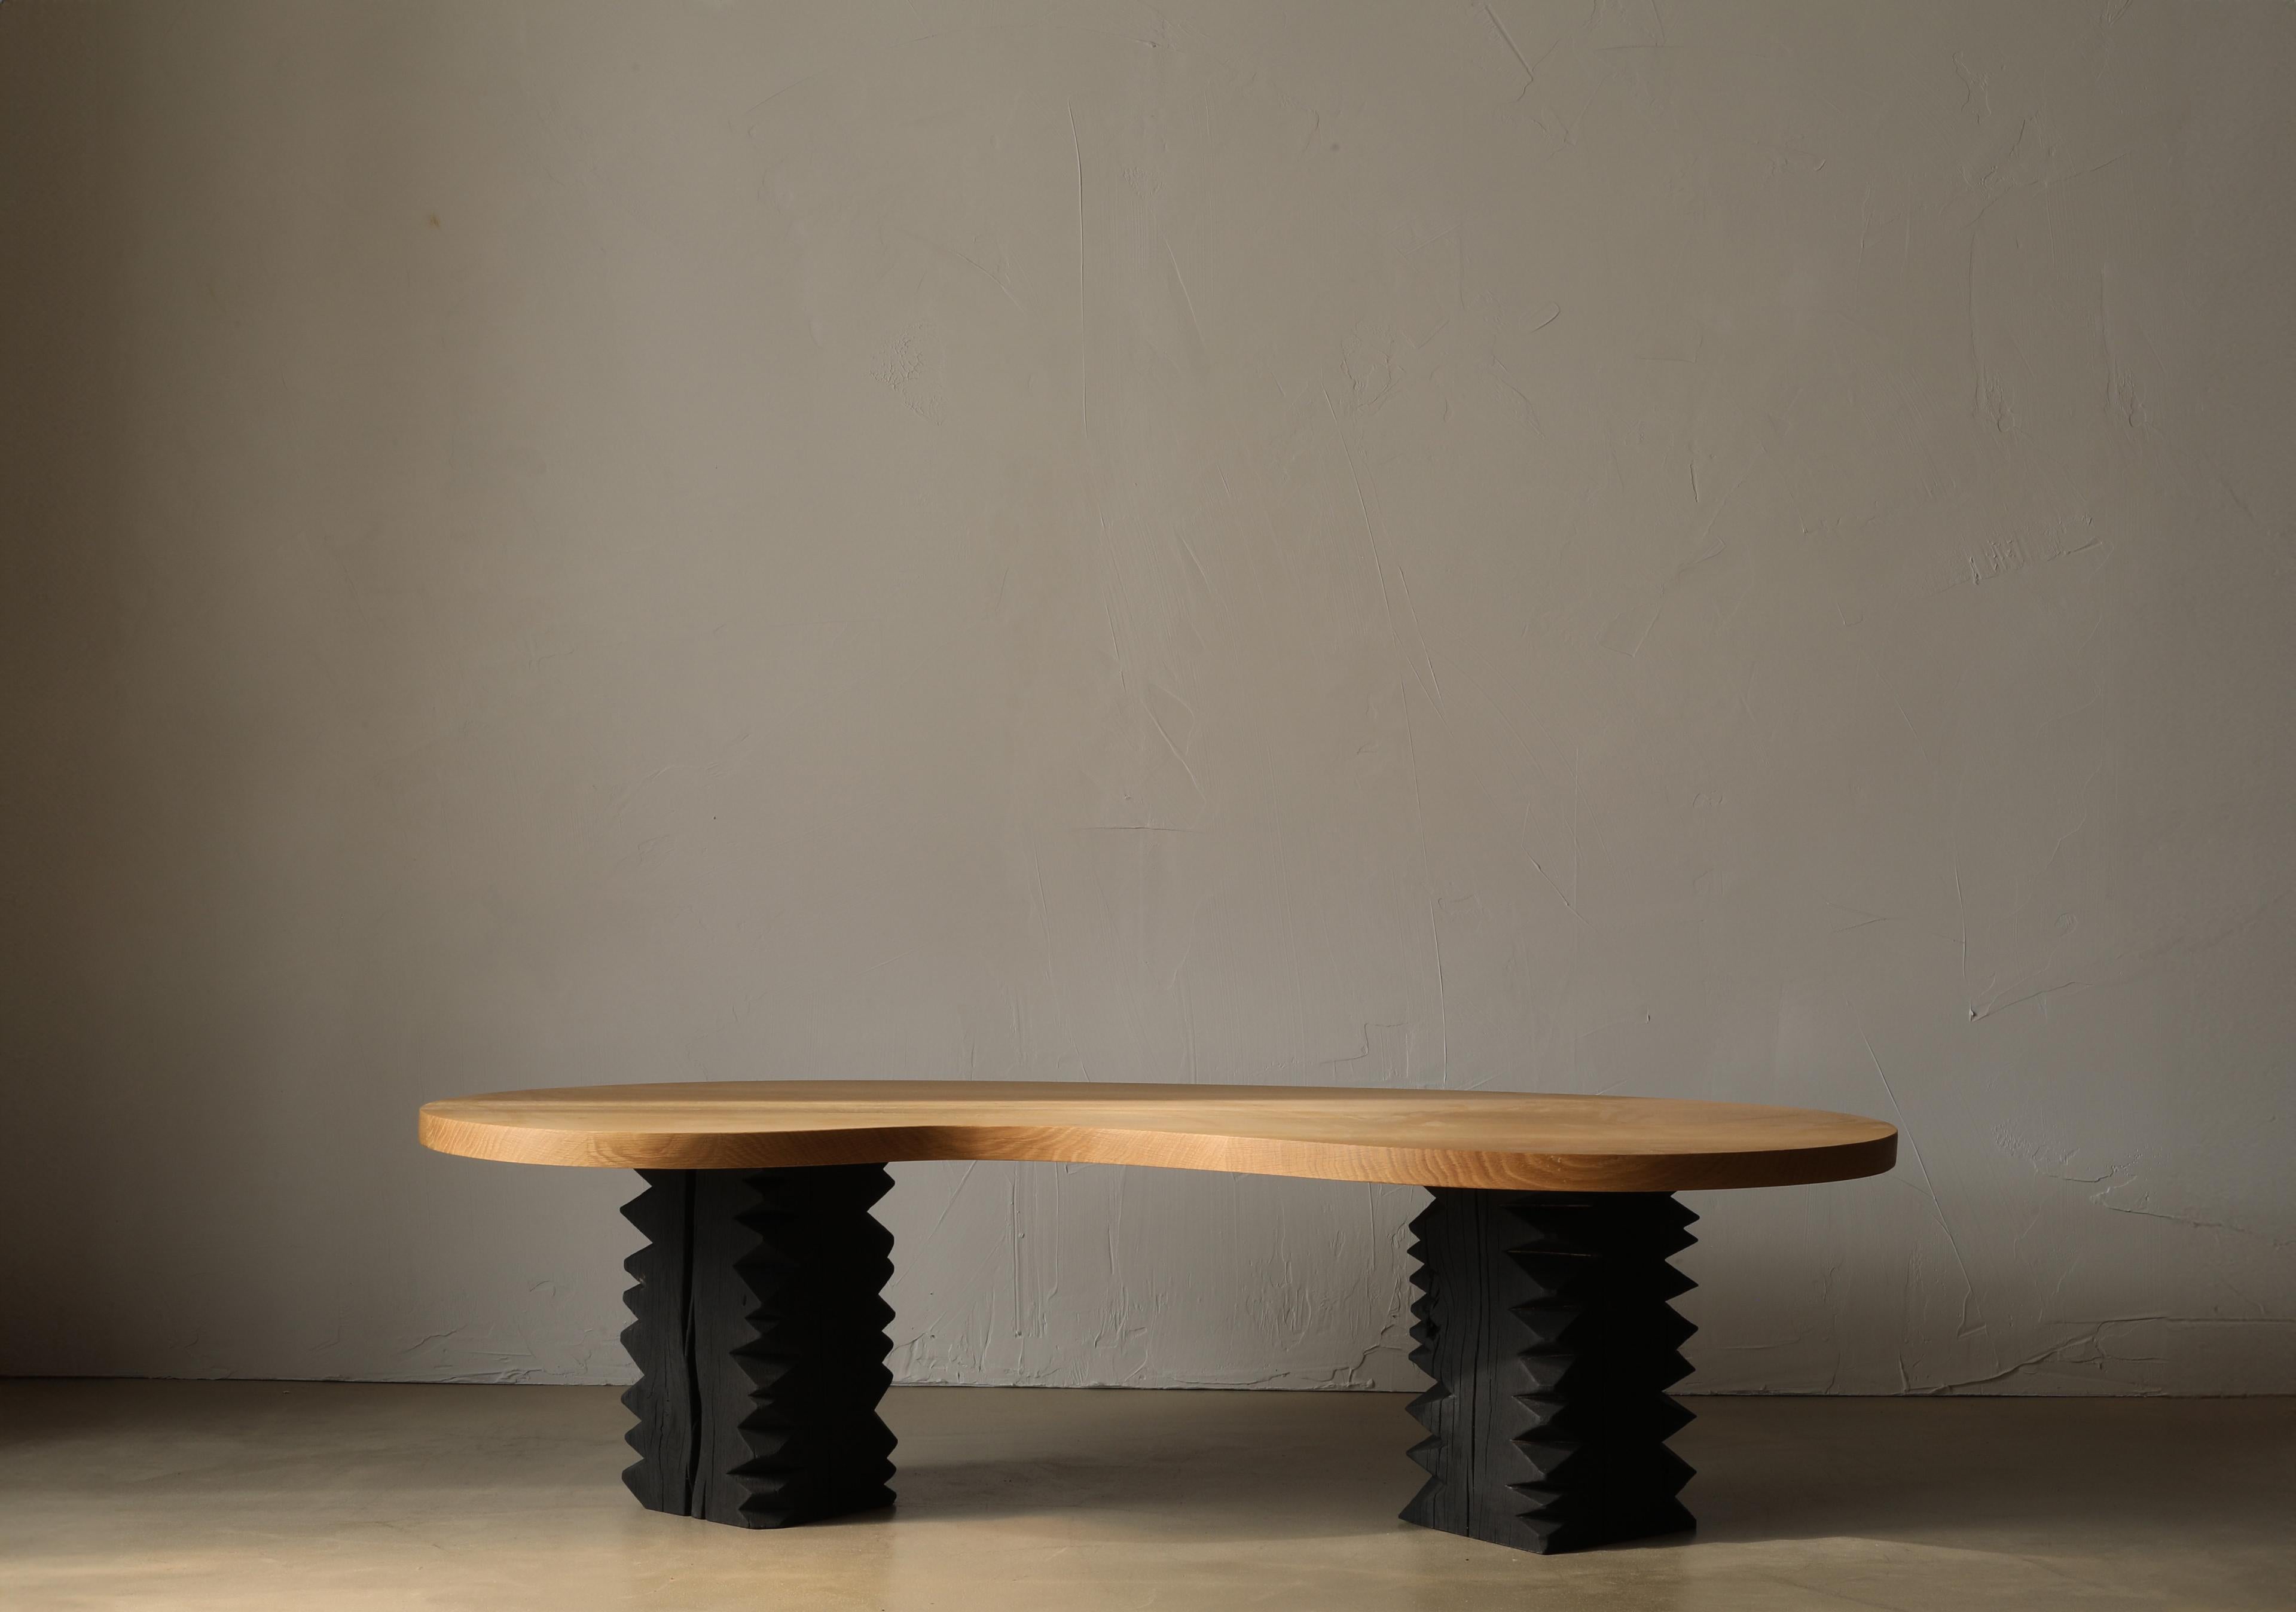 La table basse Notch II est constituée de deux solides pieds piédestaux et d'un grand plateau en chêne blanc en forme de haricot.

Cette Collectional trouve son fondement dans le 